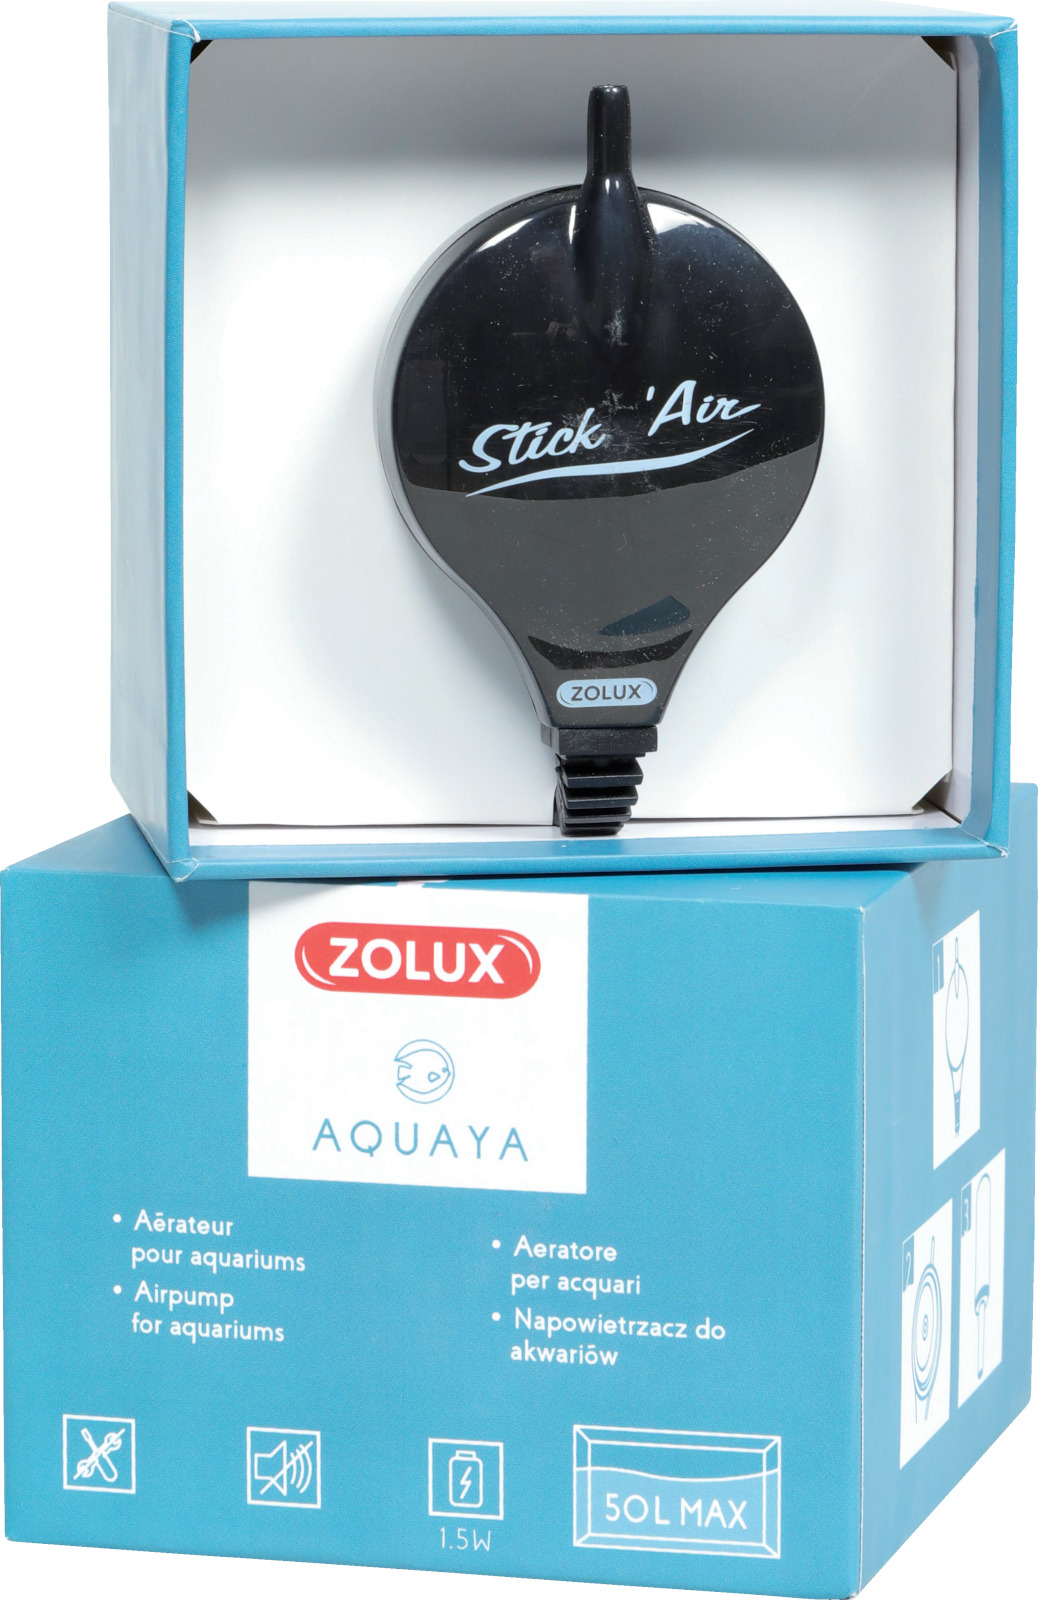 TETRA - APS 300 noire - Pompe à air pour aquarium 300 l/h